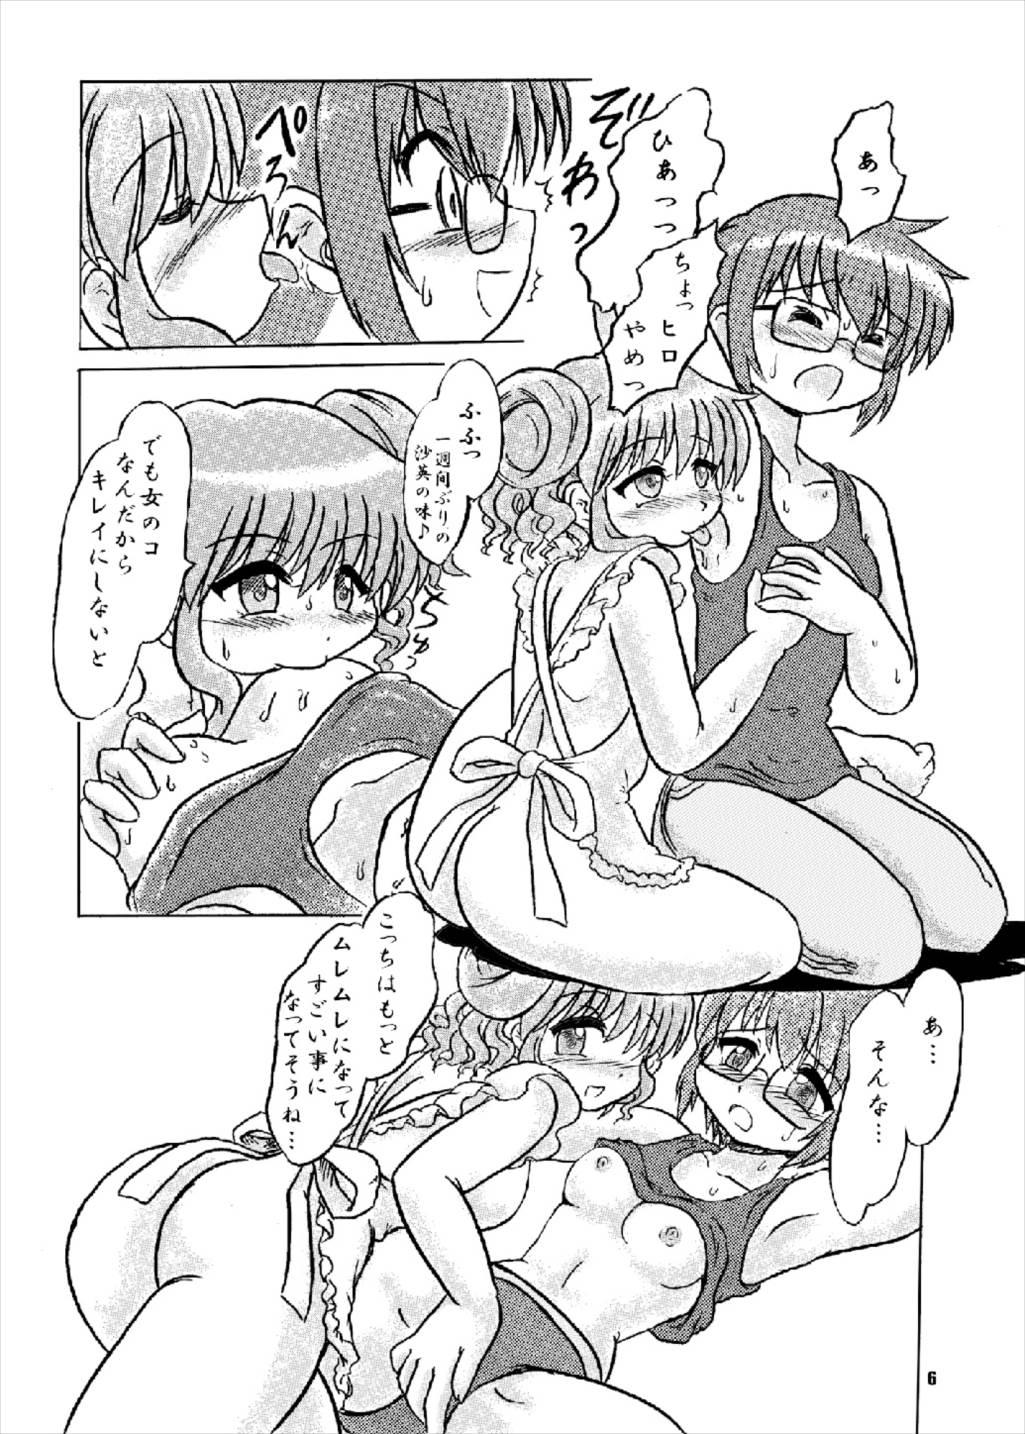 Naked Sex Shikiyoku Sketch - Hidamari sketch Love - Page 6